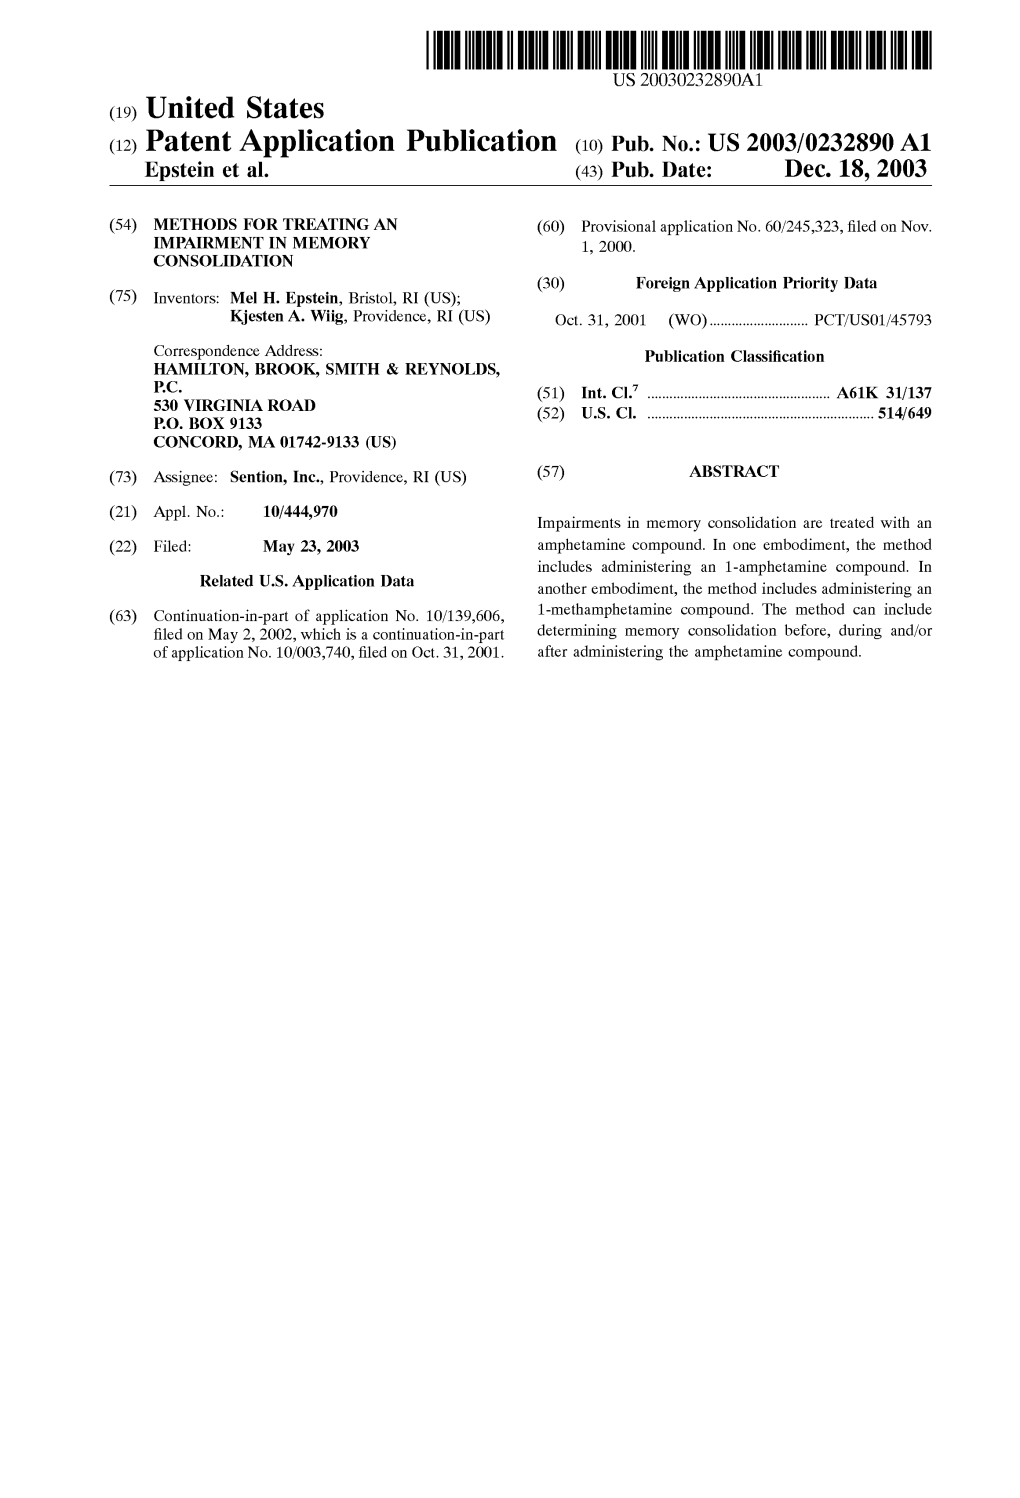 (12) Patent Application Publication (10) Pub. No.: US 2003/0232890 A1 Epstein Et Al